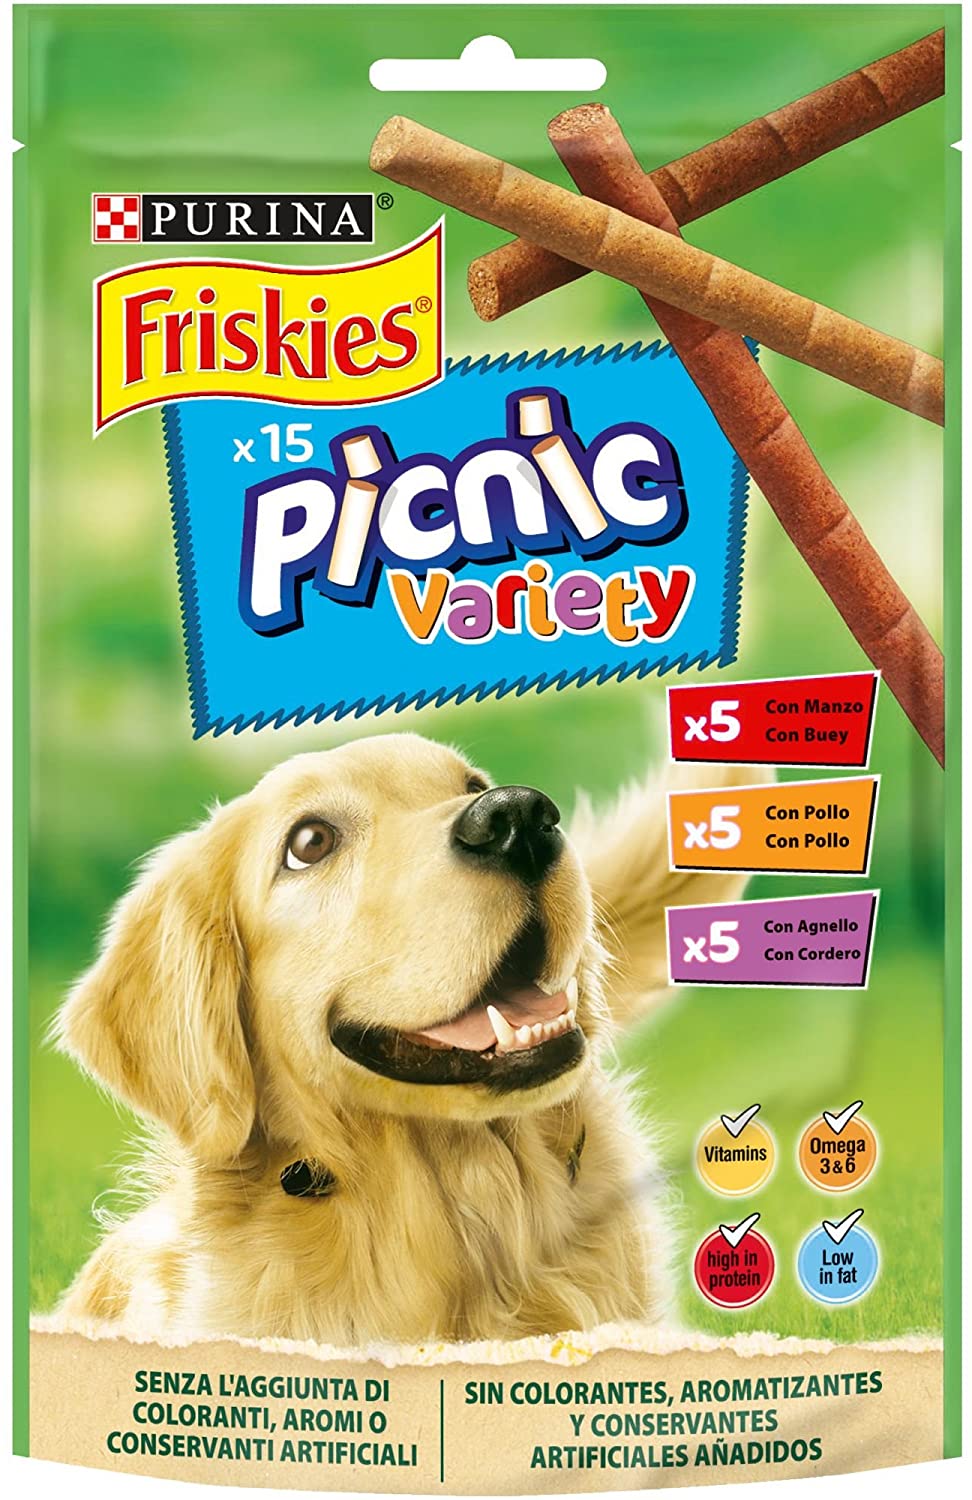  Purina Friskies Picnic Variety golosinas y chuches para perros 8 x 126 g 